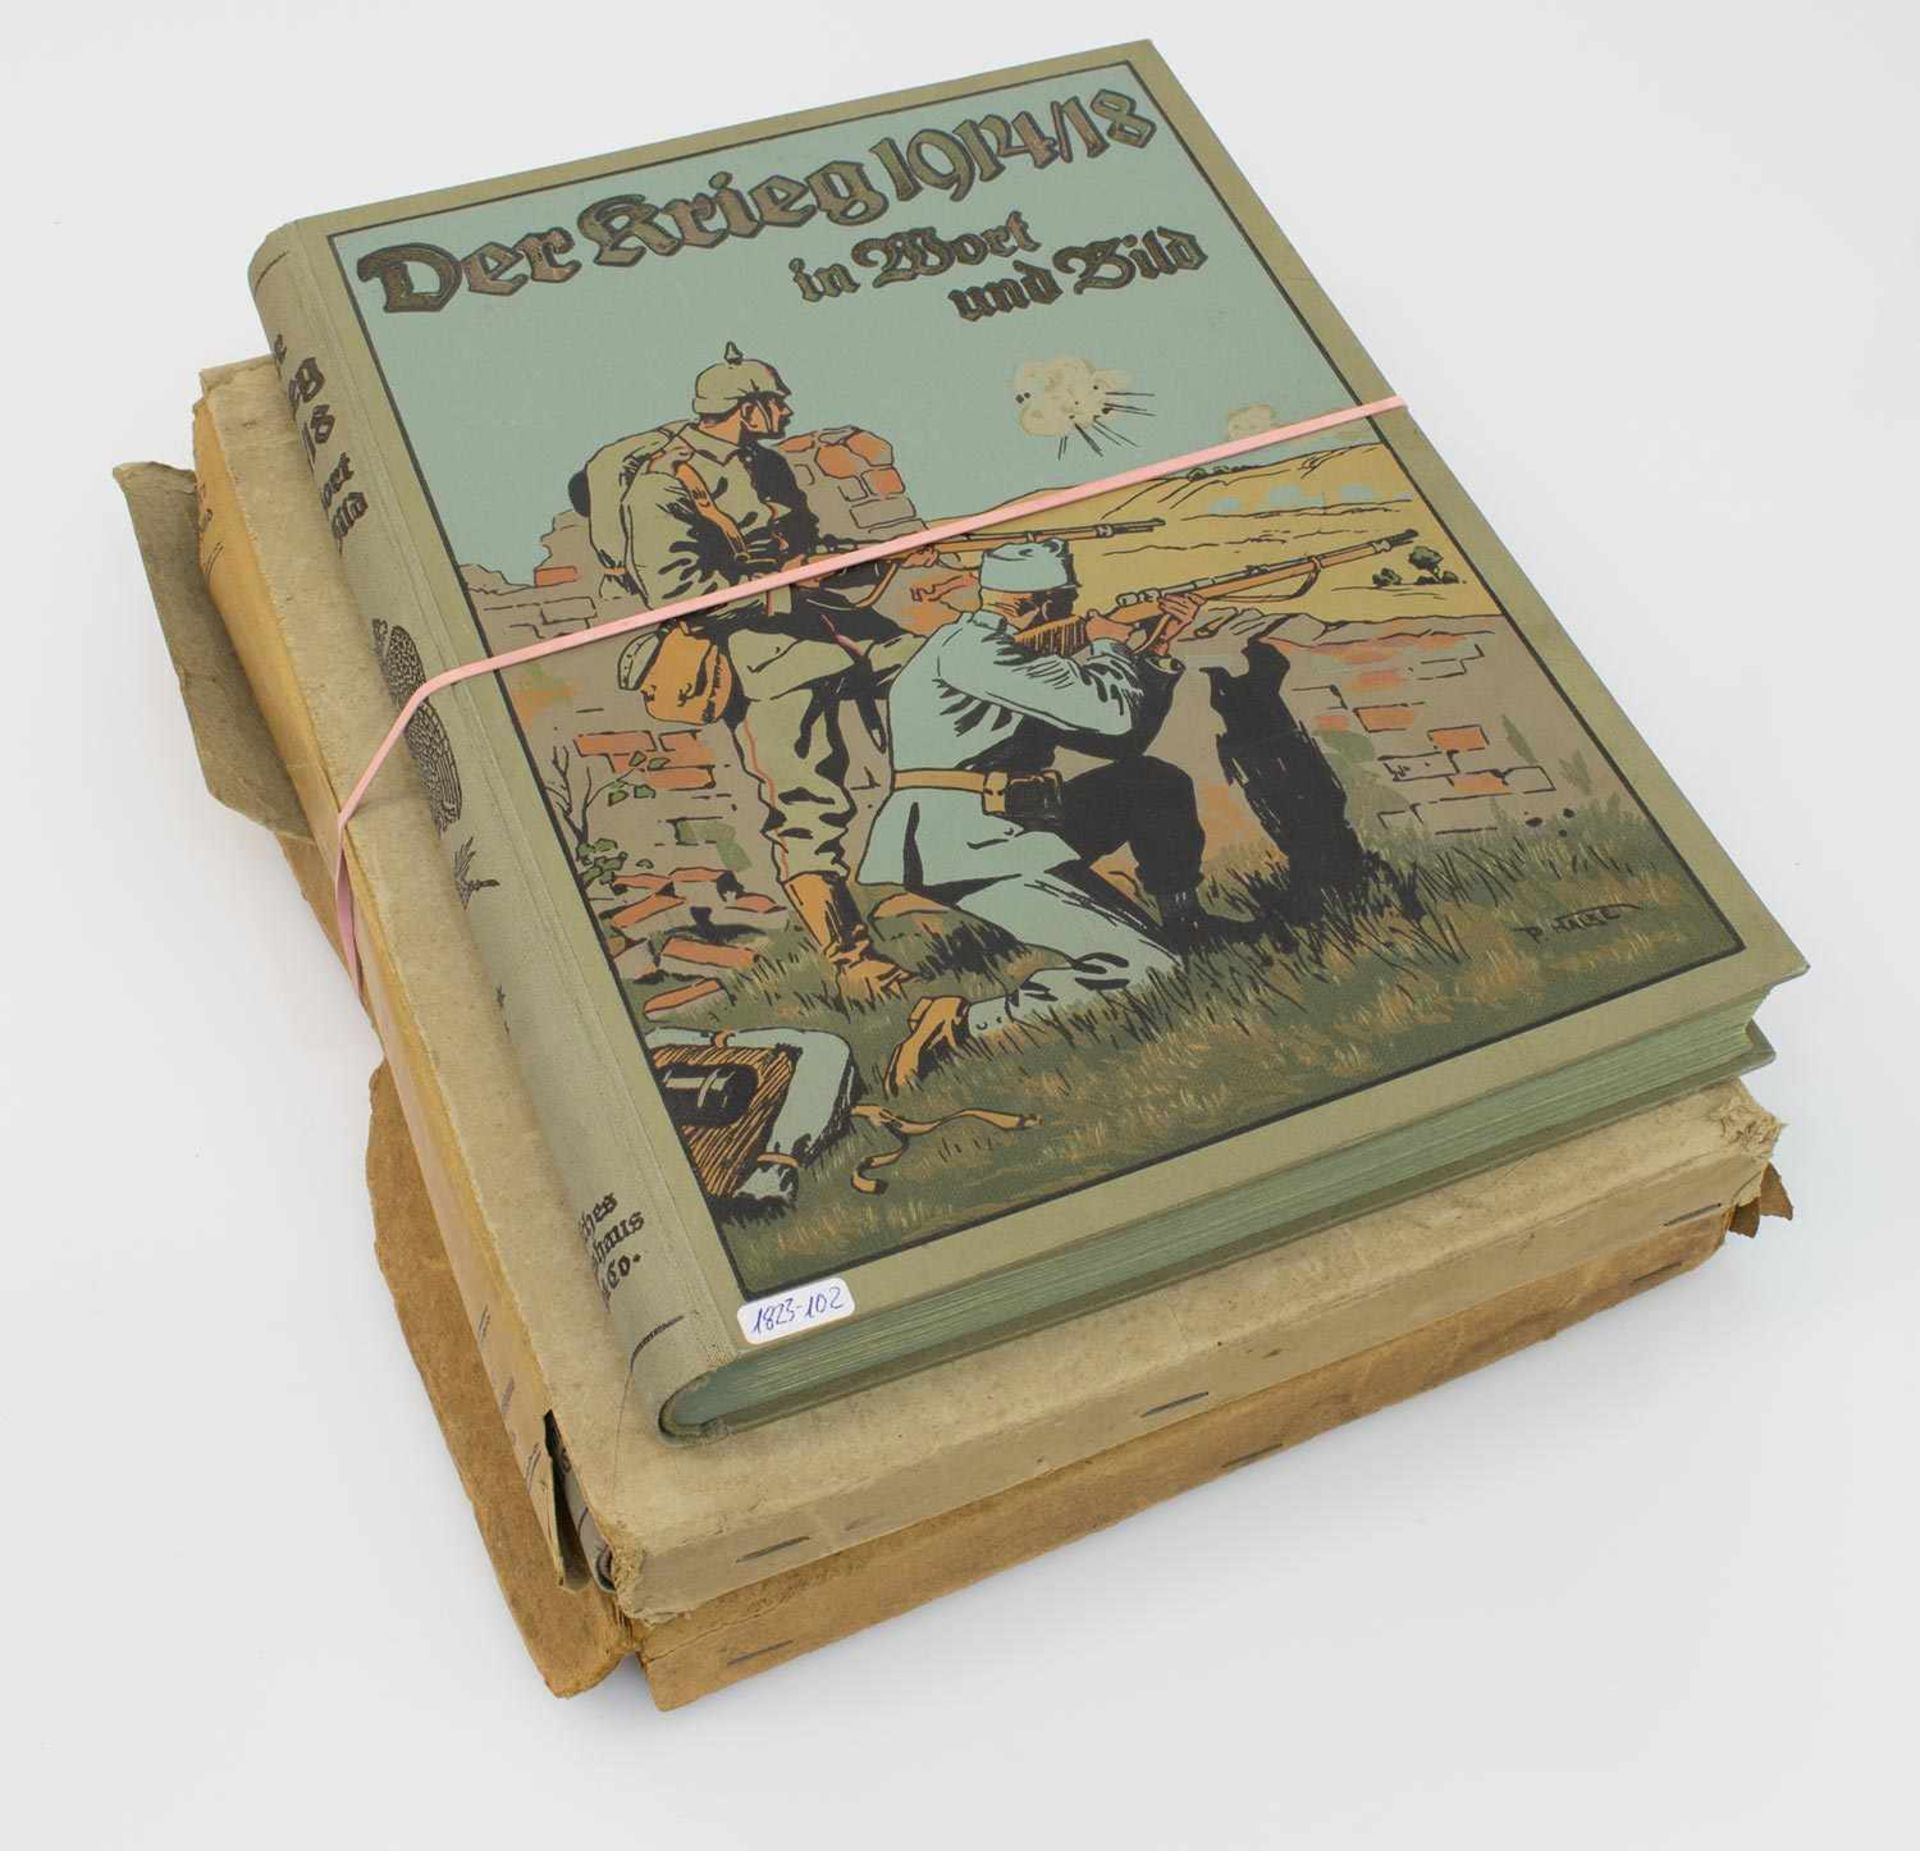 Herausgeber Der Krieg 1914/ 17 in Wort und Bild, Verlagshaus Bong & Co, 1916-18, Bd. 1/ 2 u. 3,